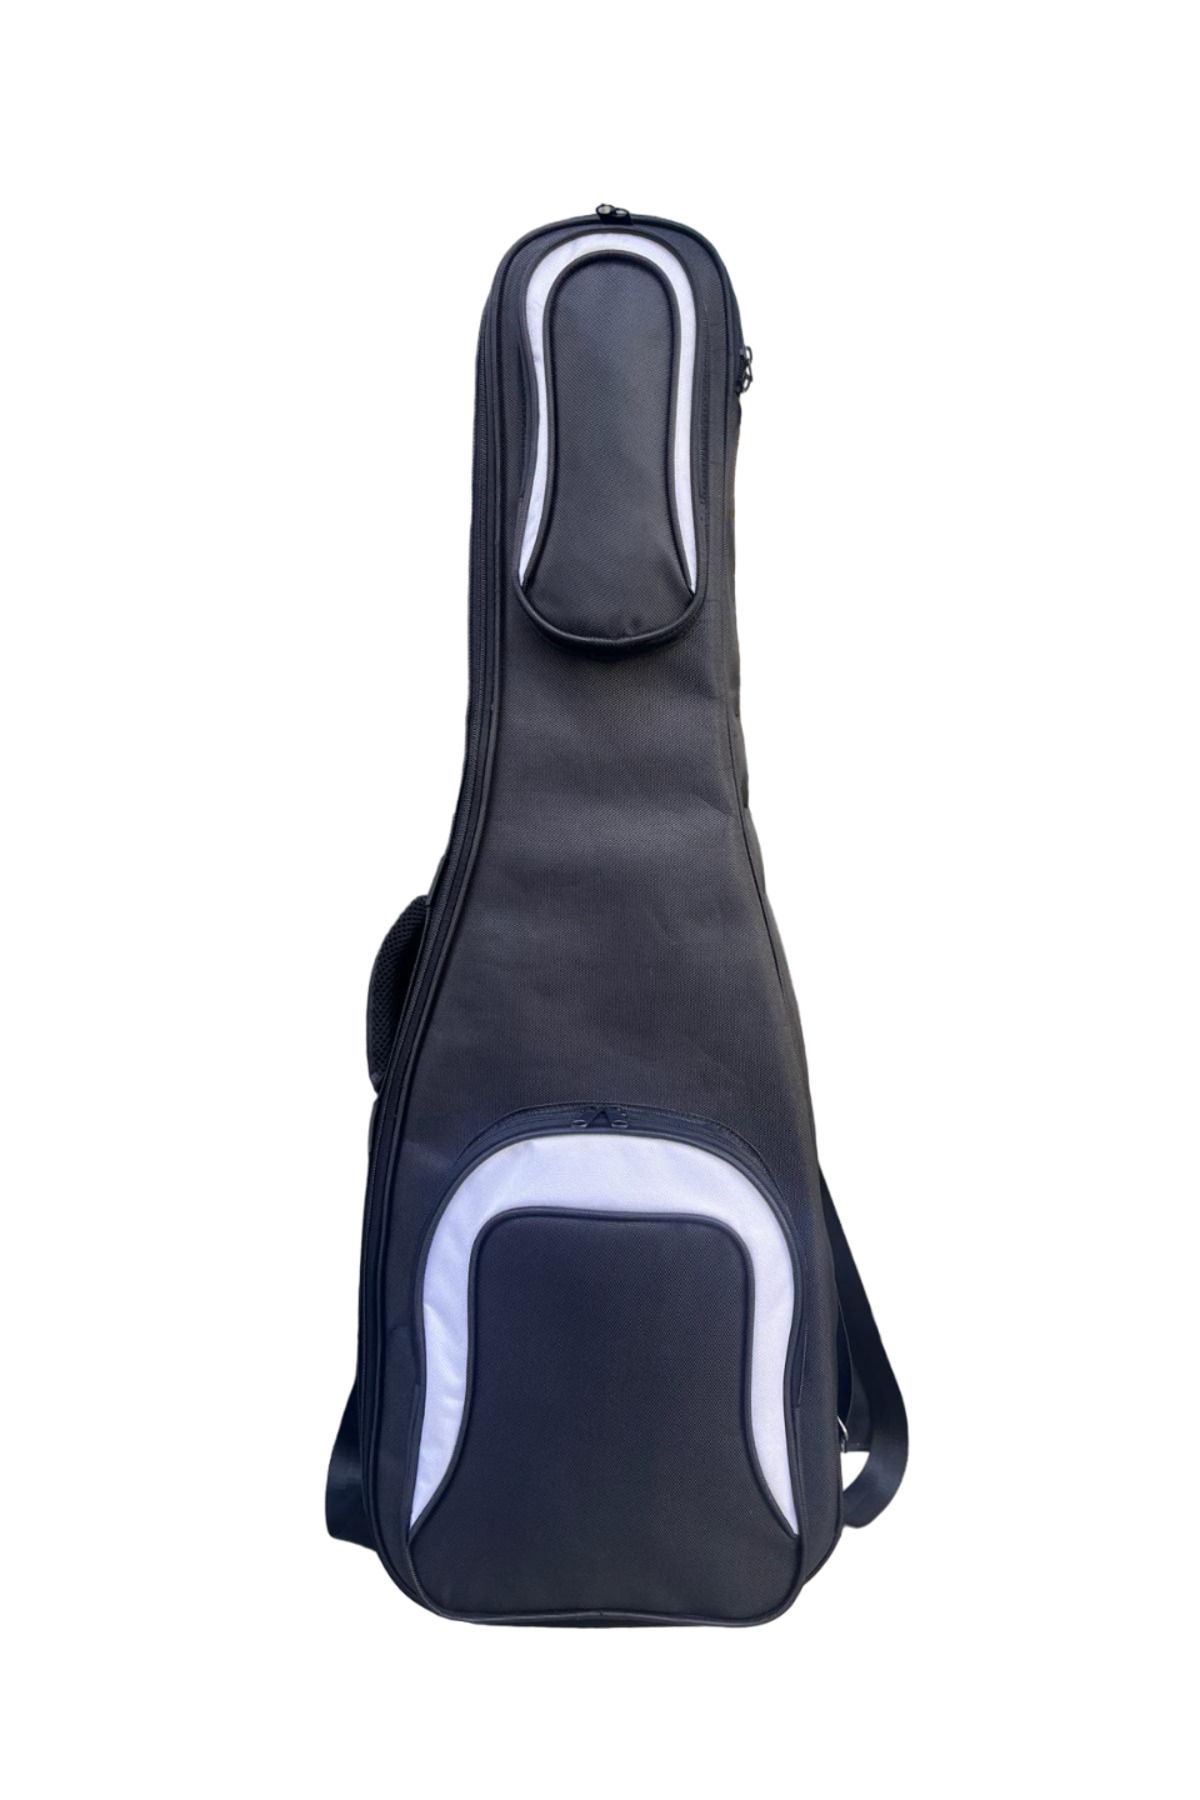 Erga Müzik Kingbag-05 Soft Case Siyah Elektro Gitar Kılıfı Taşıma Çantası